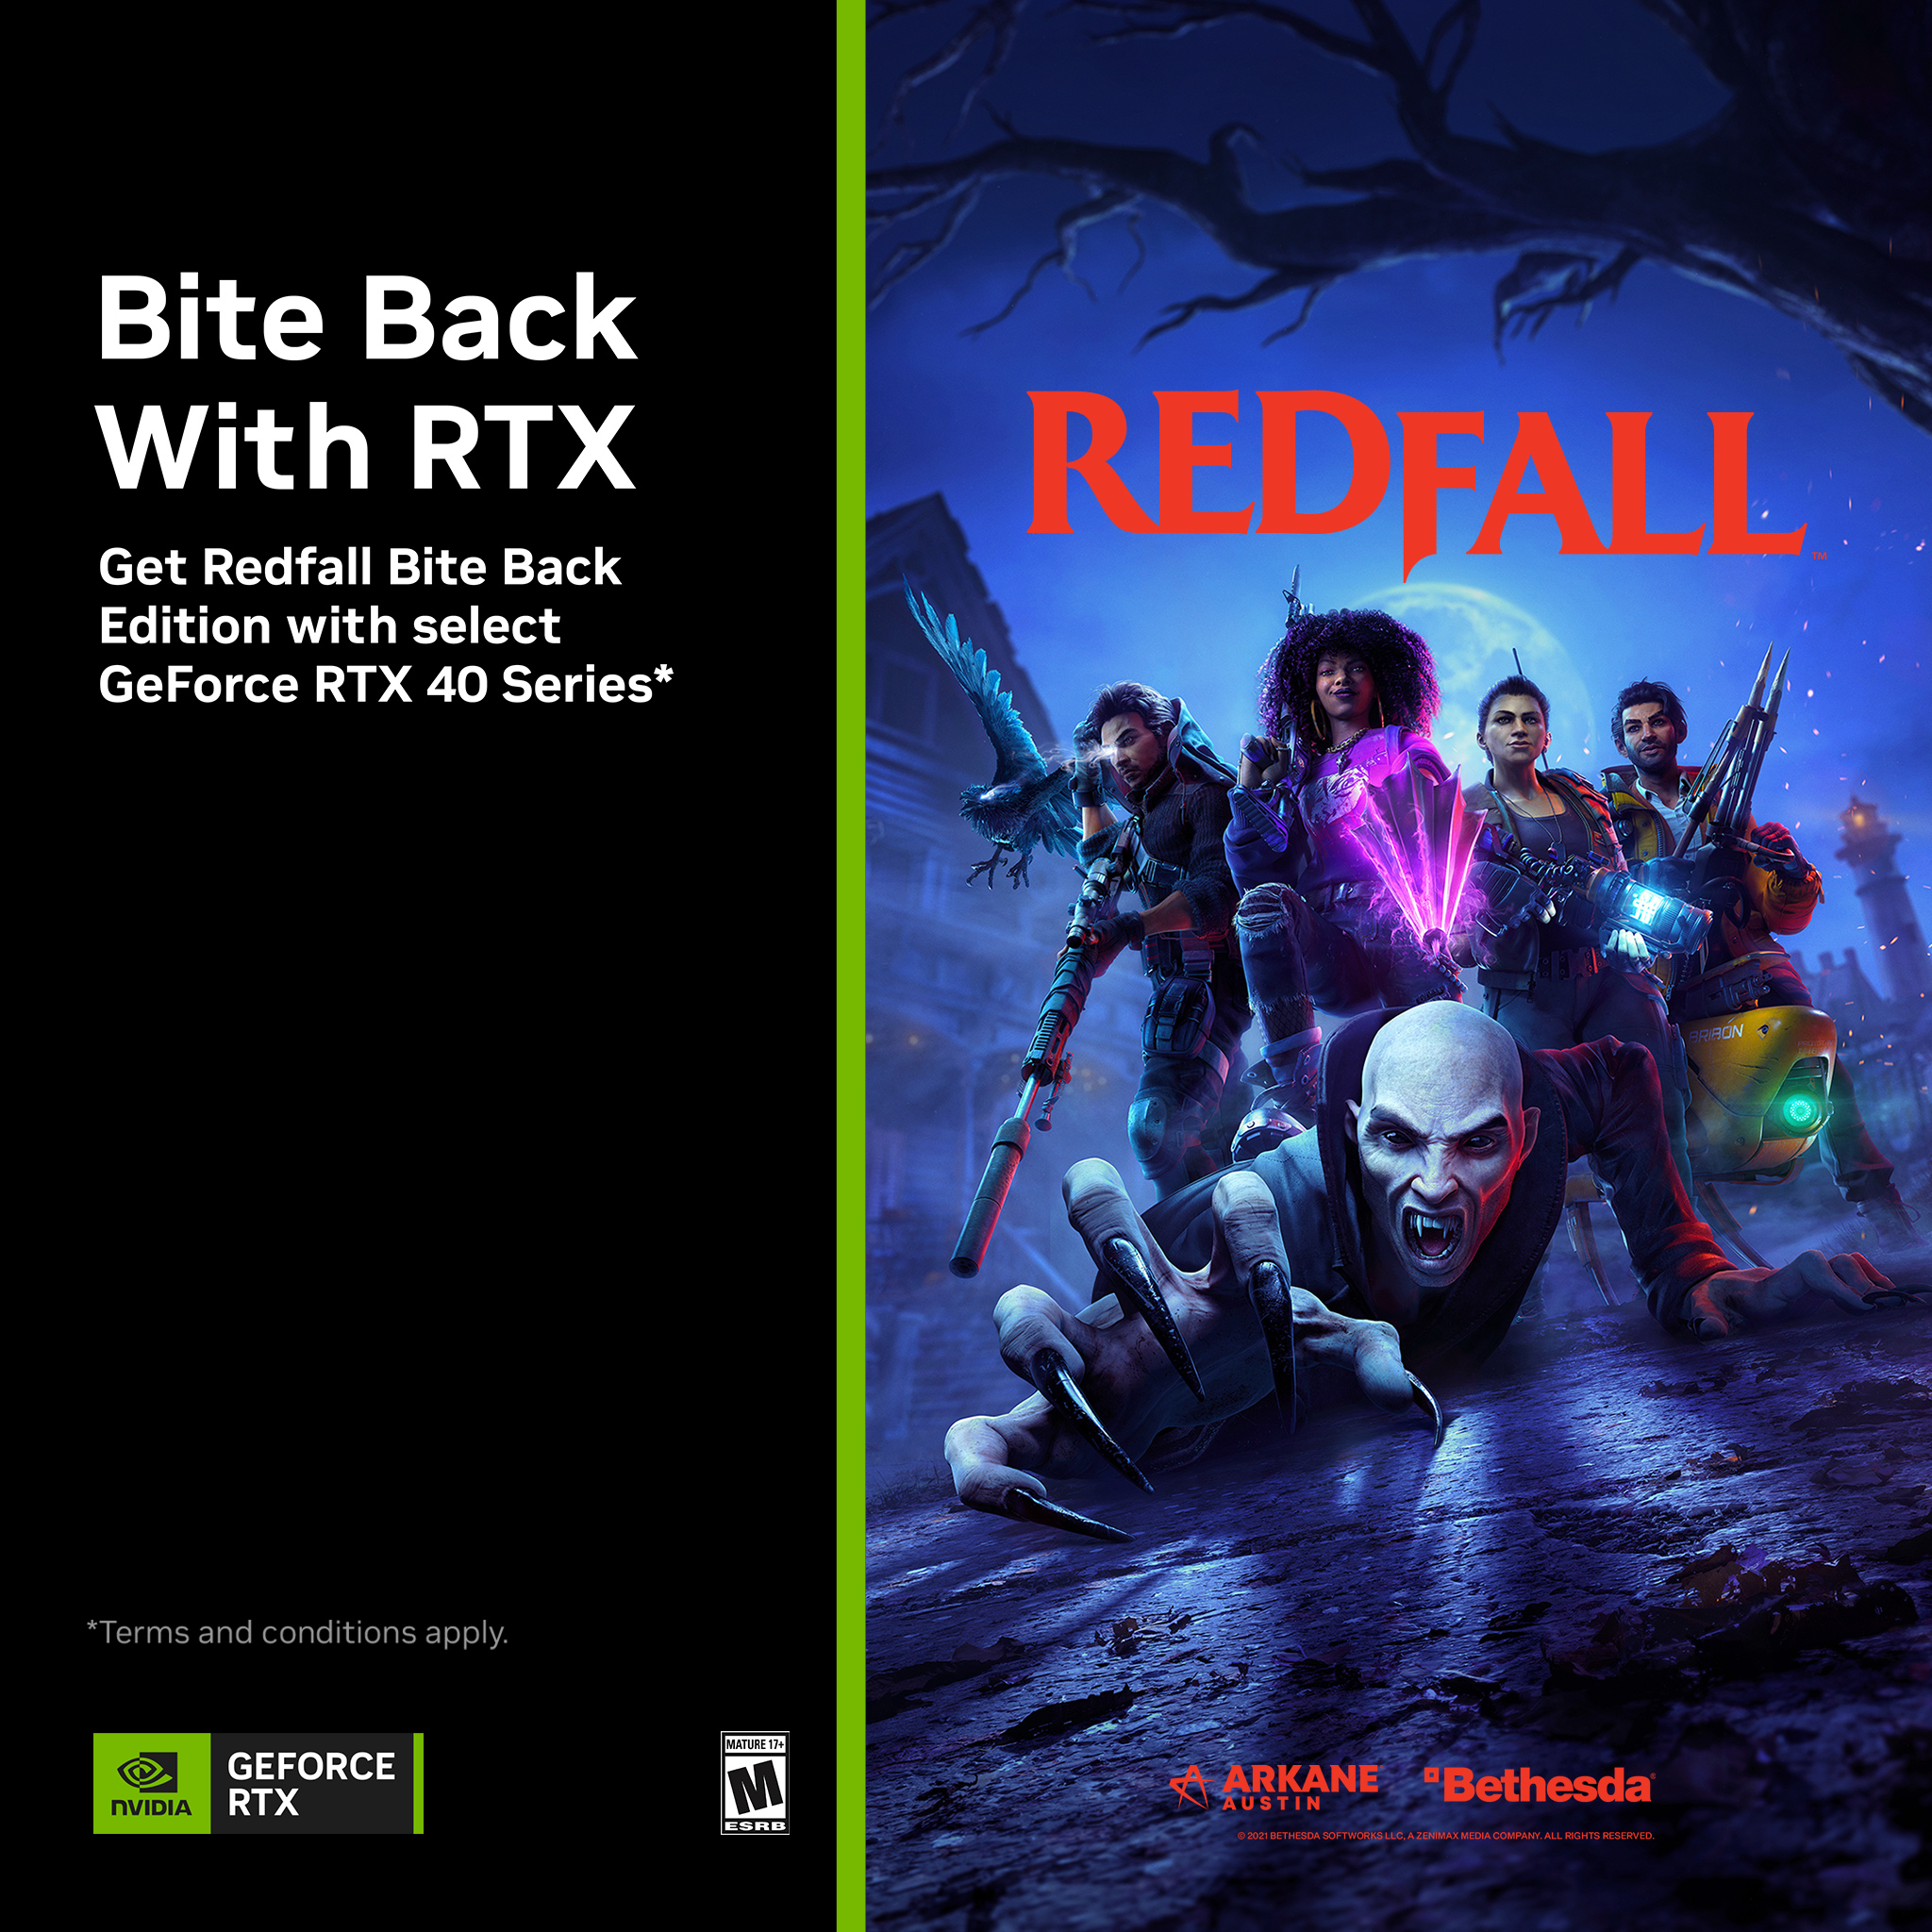 Nhận ngay Redfall Bite Back Edition Khi Mua Dòng Sản Phẩm Geforce Rtx 40 Series*